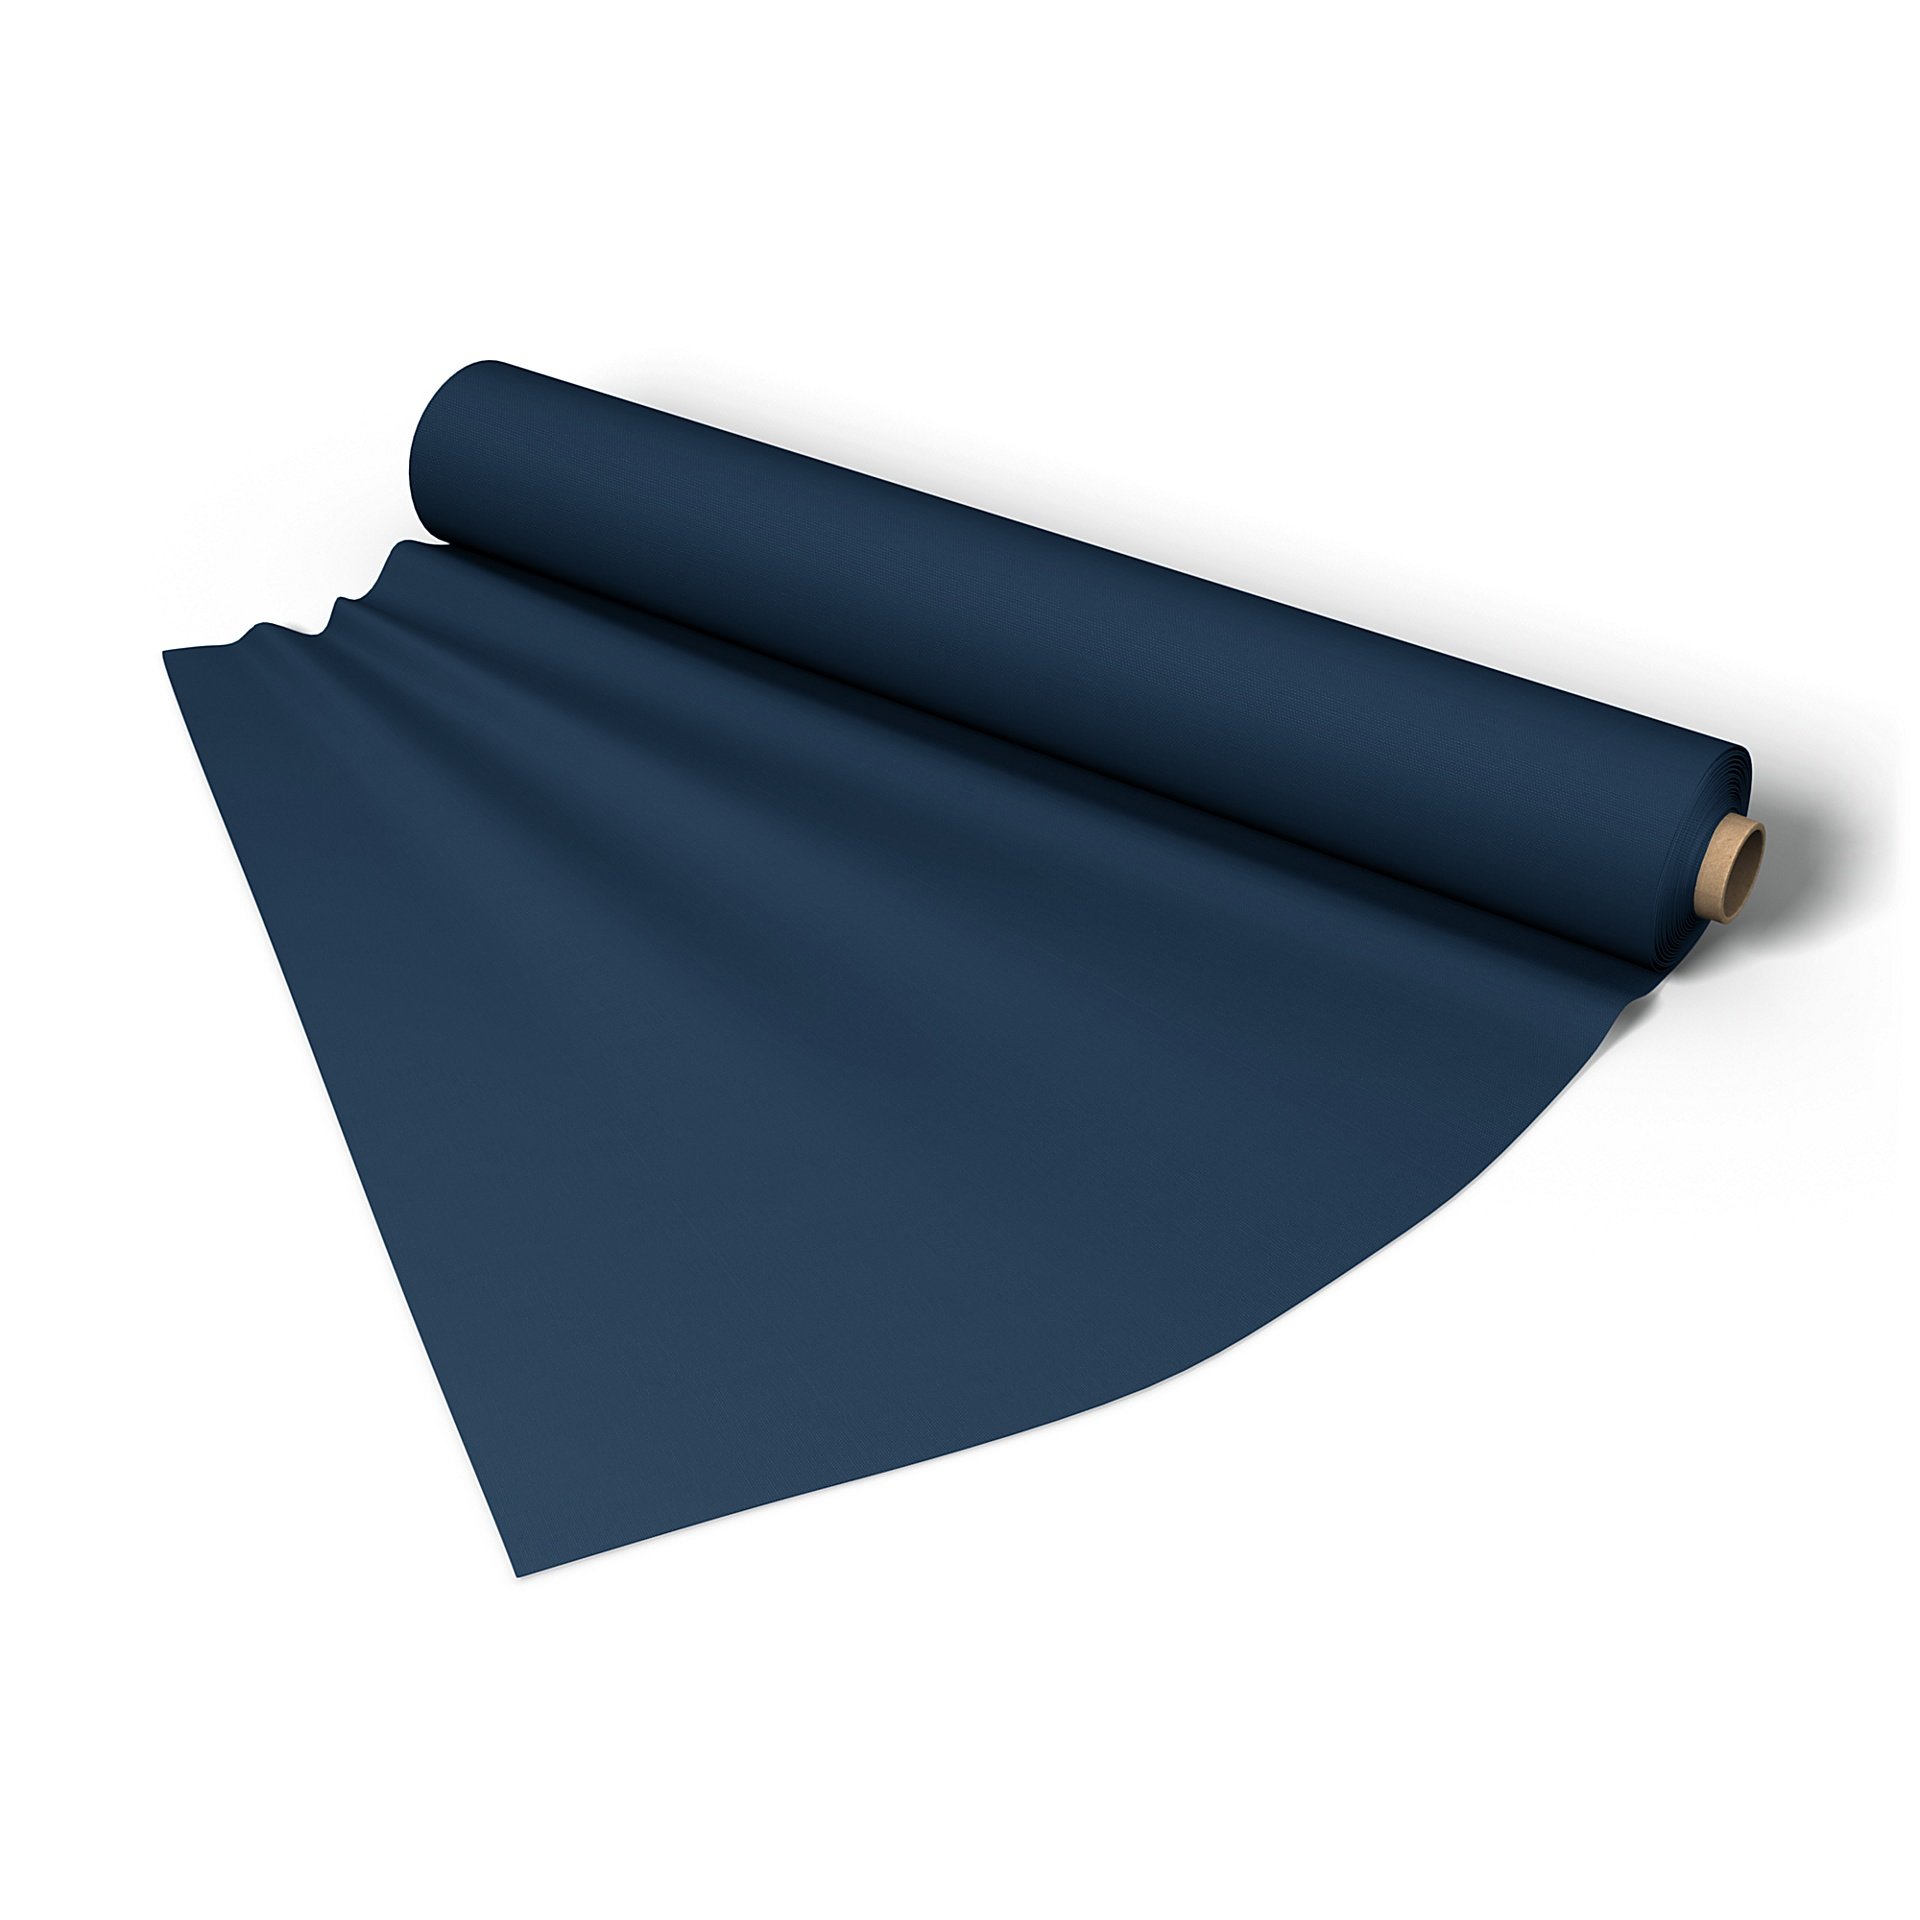 Fabric per metre, Deep Navy Blue, Cotton - Bemz